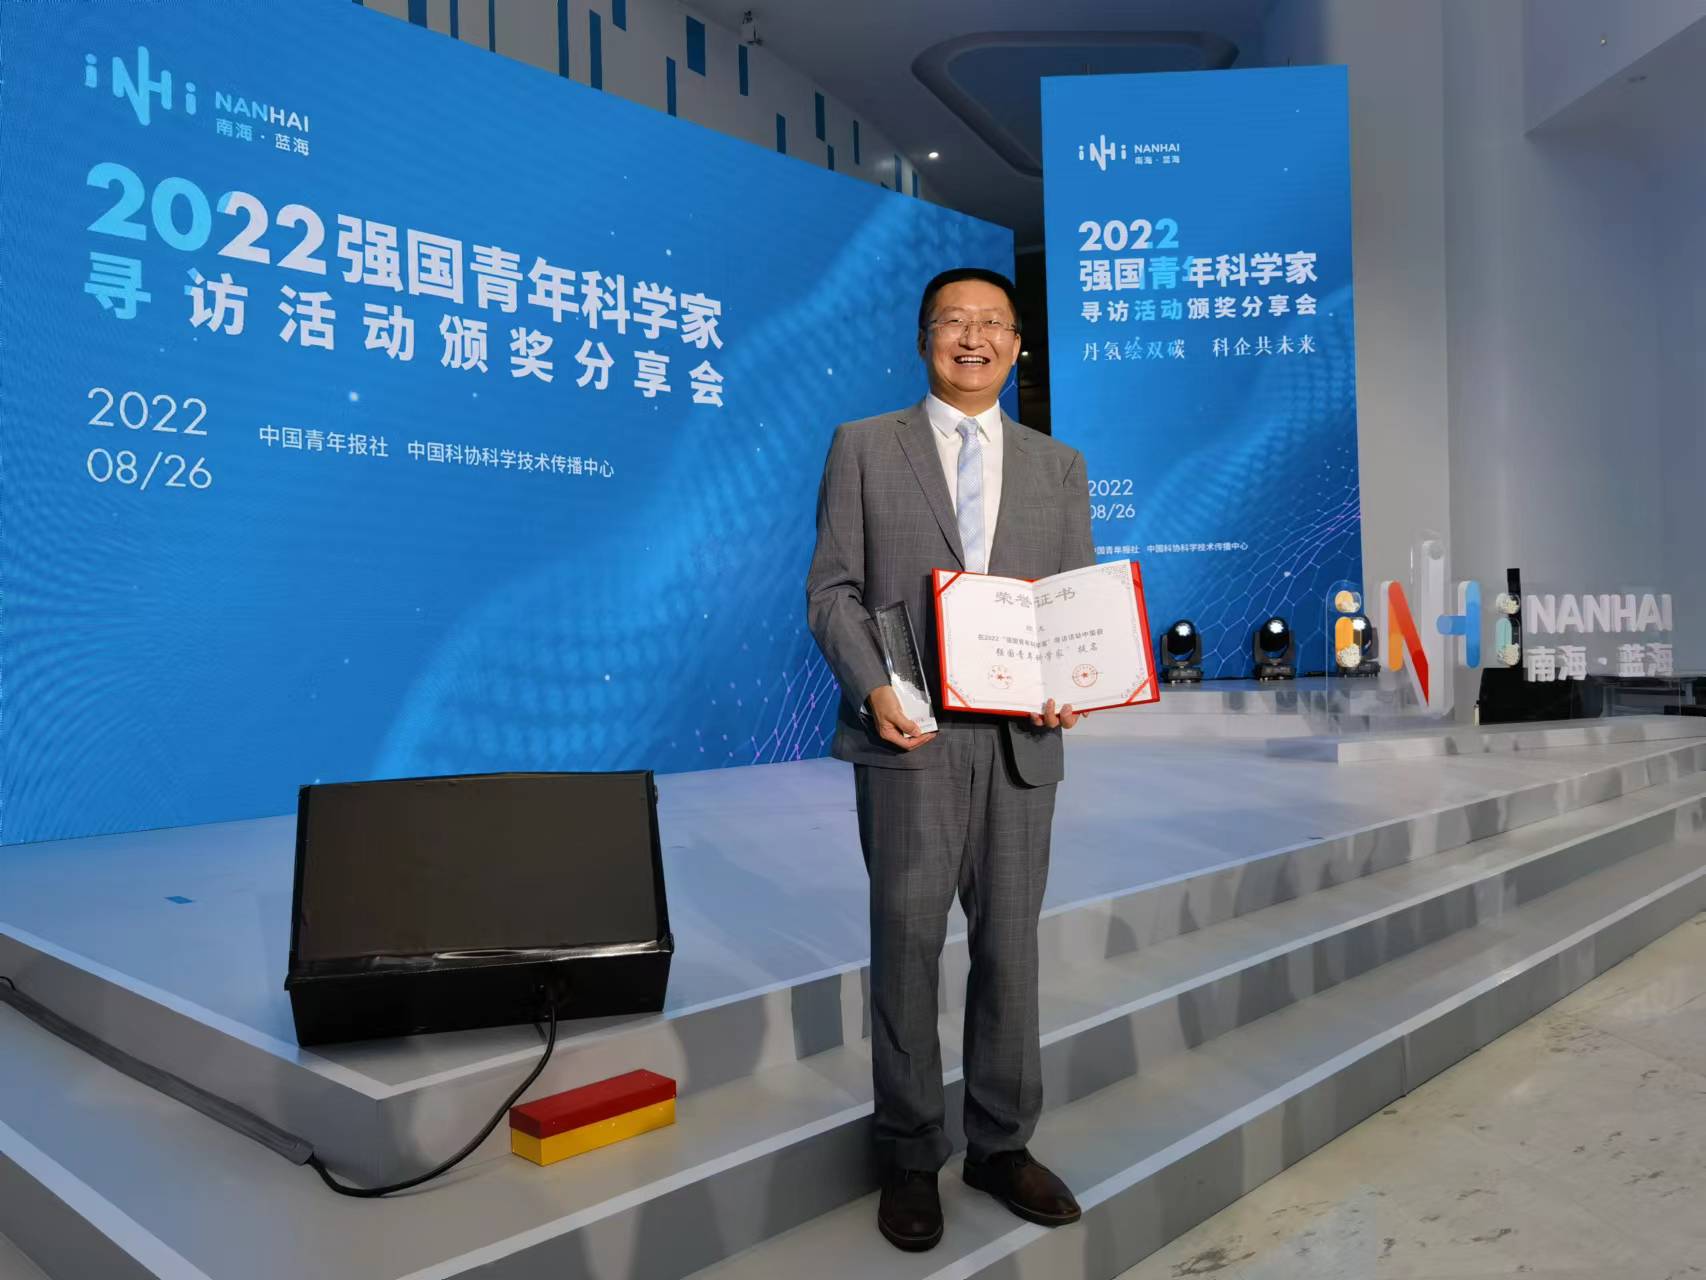 美高梅官网顾龙教授获评2022“强国青年科学家提名”